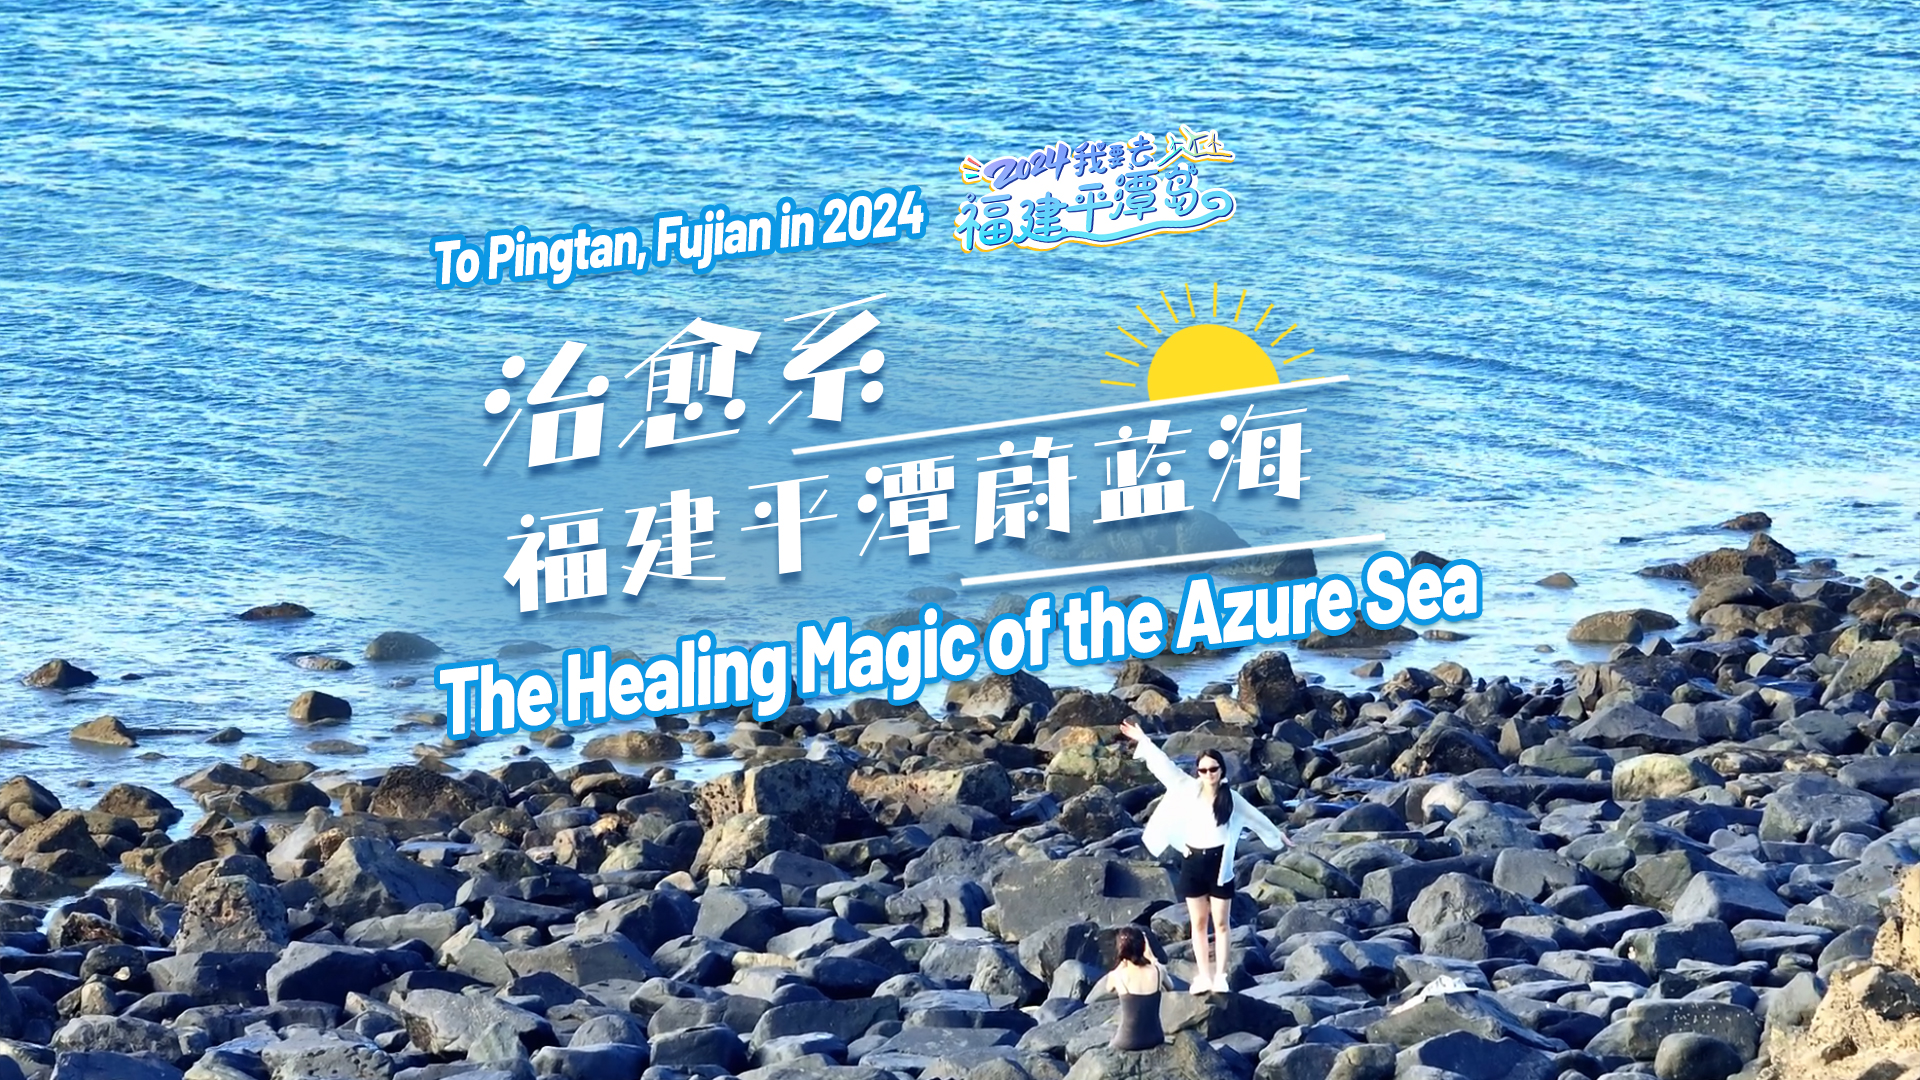 The Healing Magic of the Azure Sea